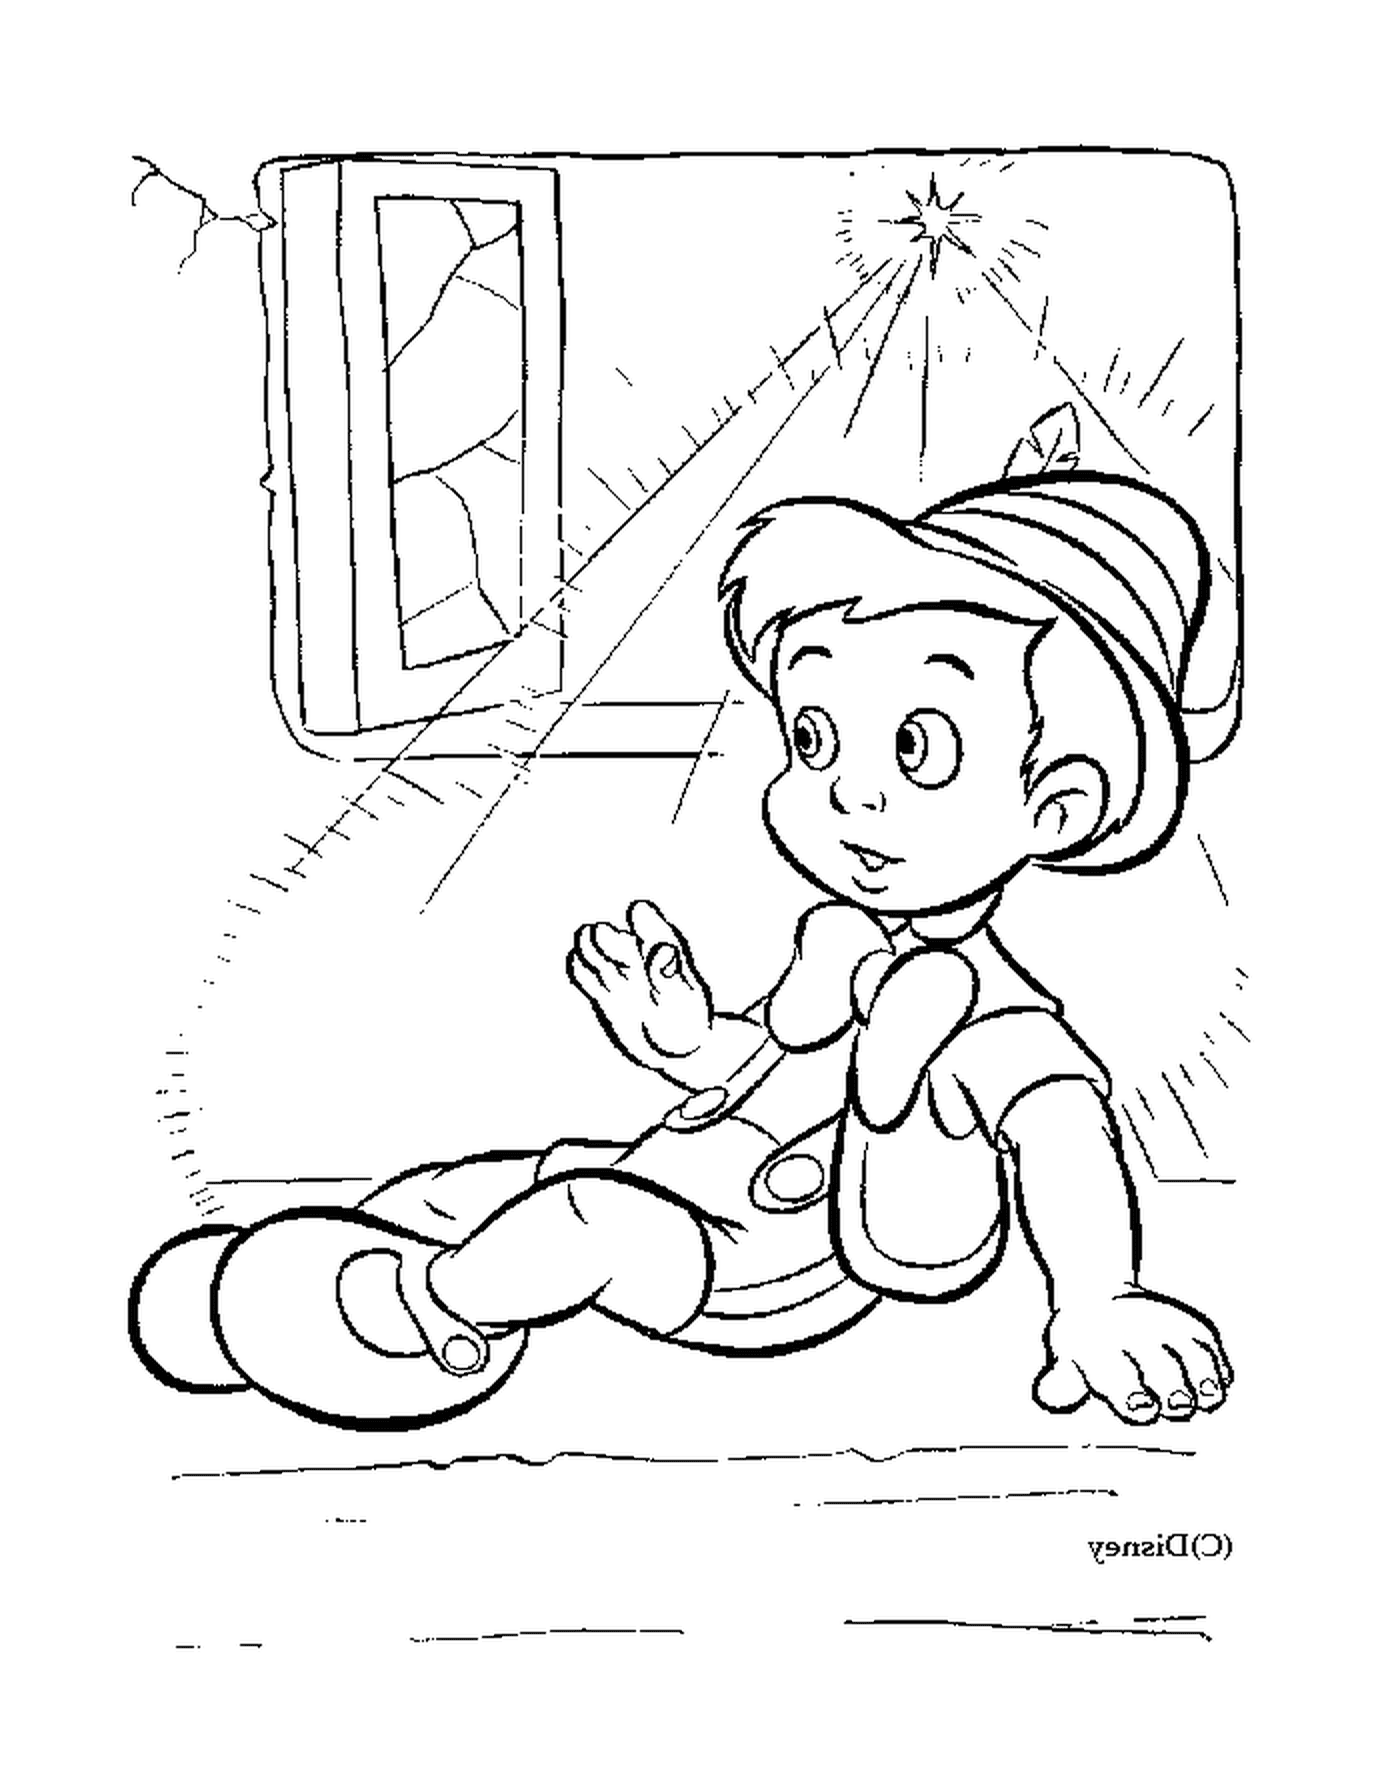 Pinocchio devant une fenetre